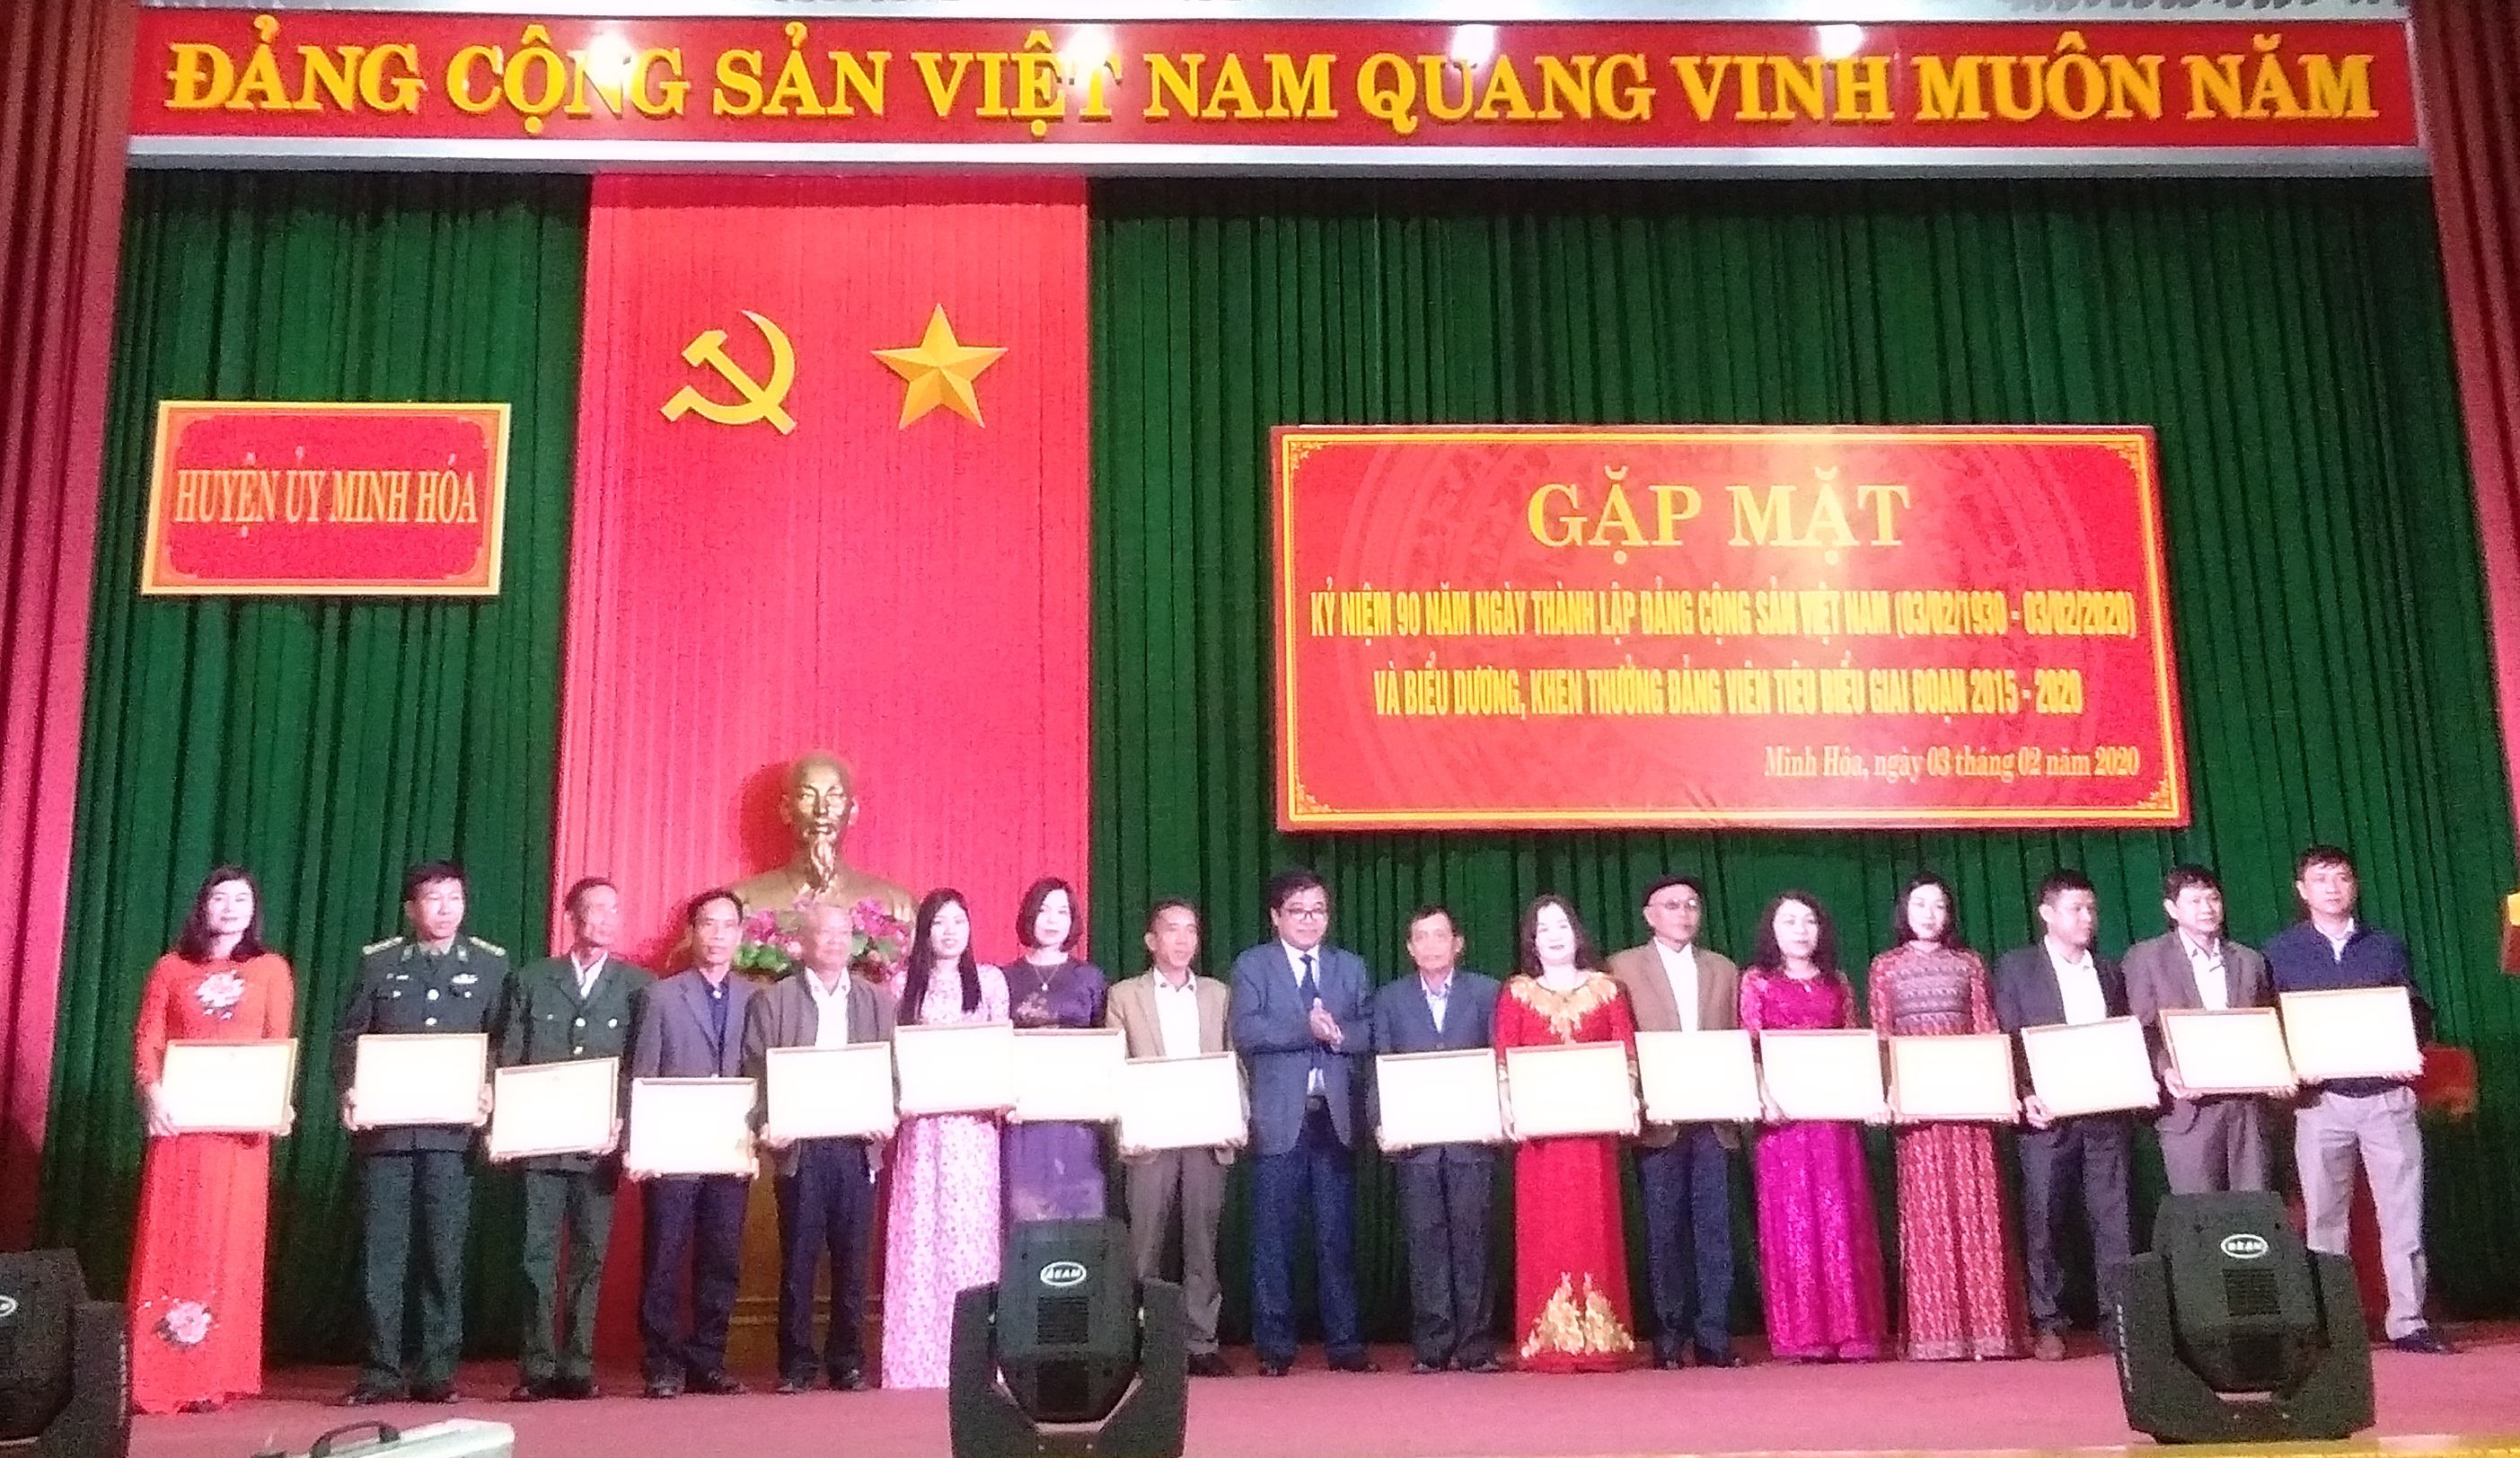 Đồng chí Đoàn Ngọc Lâm, Bí thư Huyện ủy Minh Hóa khen thưởng cho các đảng viên có đóng góp tiểu biểu đối với công tác xây dựng Đảng.